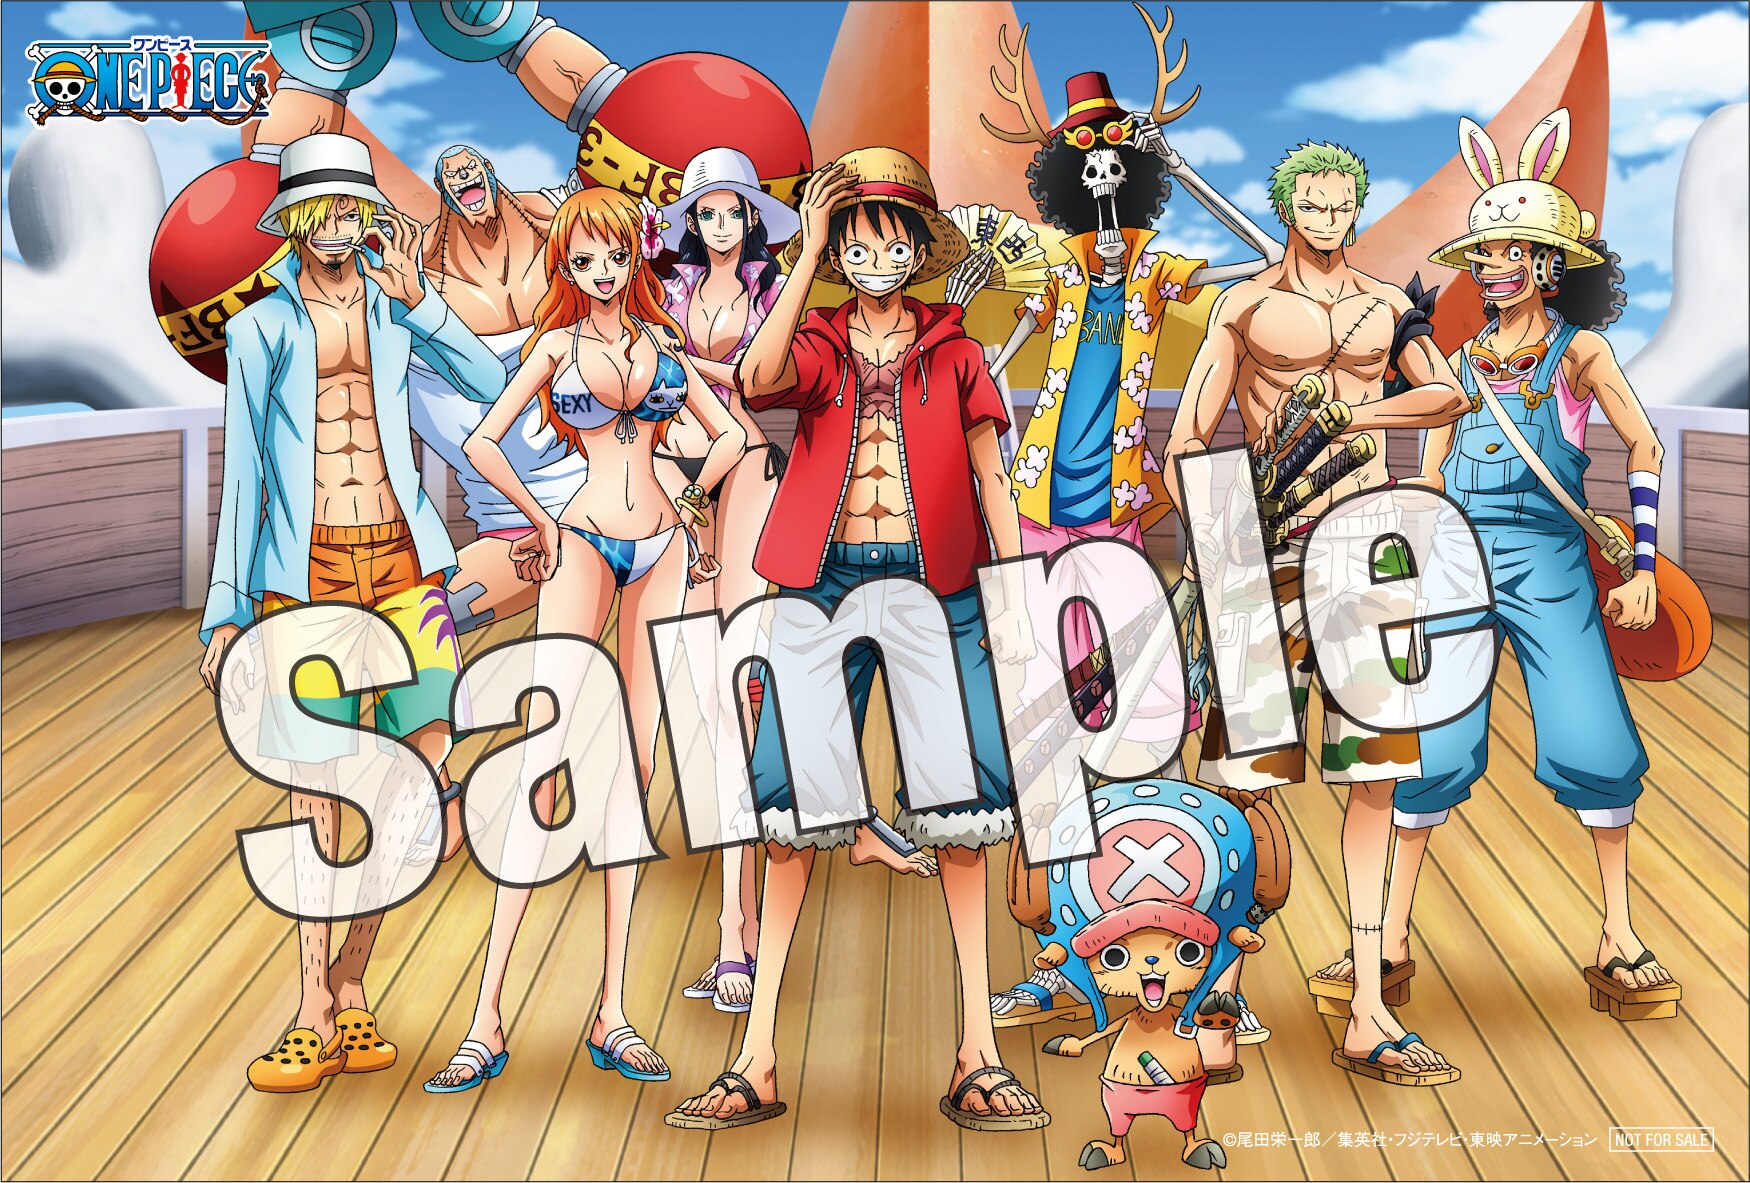 ワンピース ハートオブ ゴールド Dvdレンタルキャンペーン実施 News One Piece ワンピース Dvd公式サイト